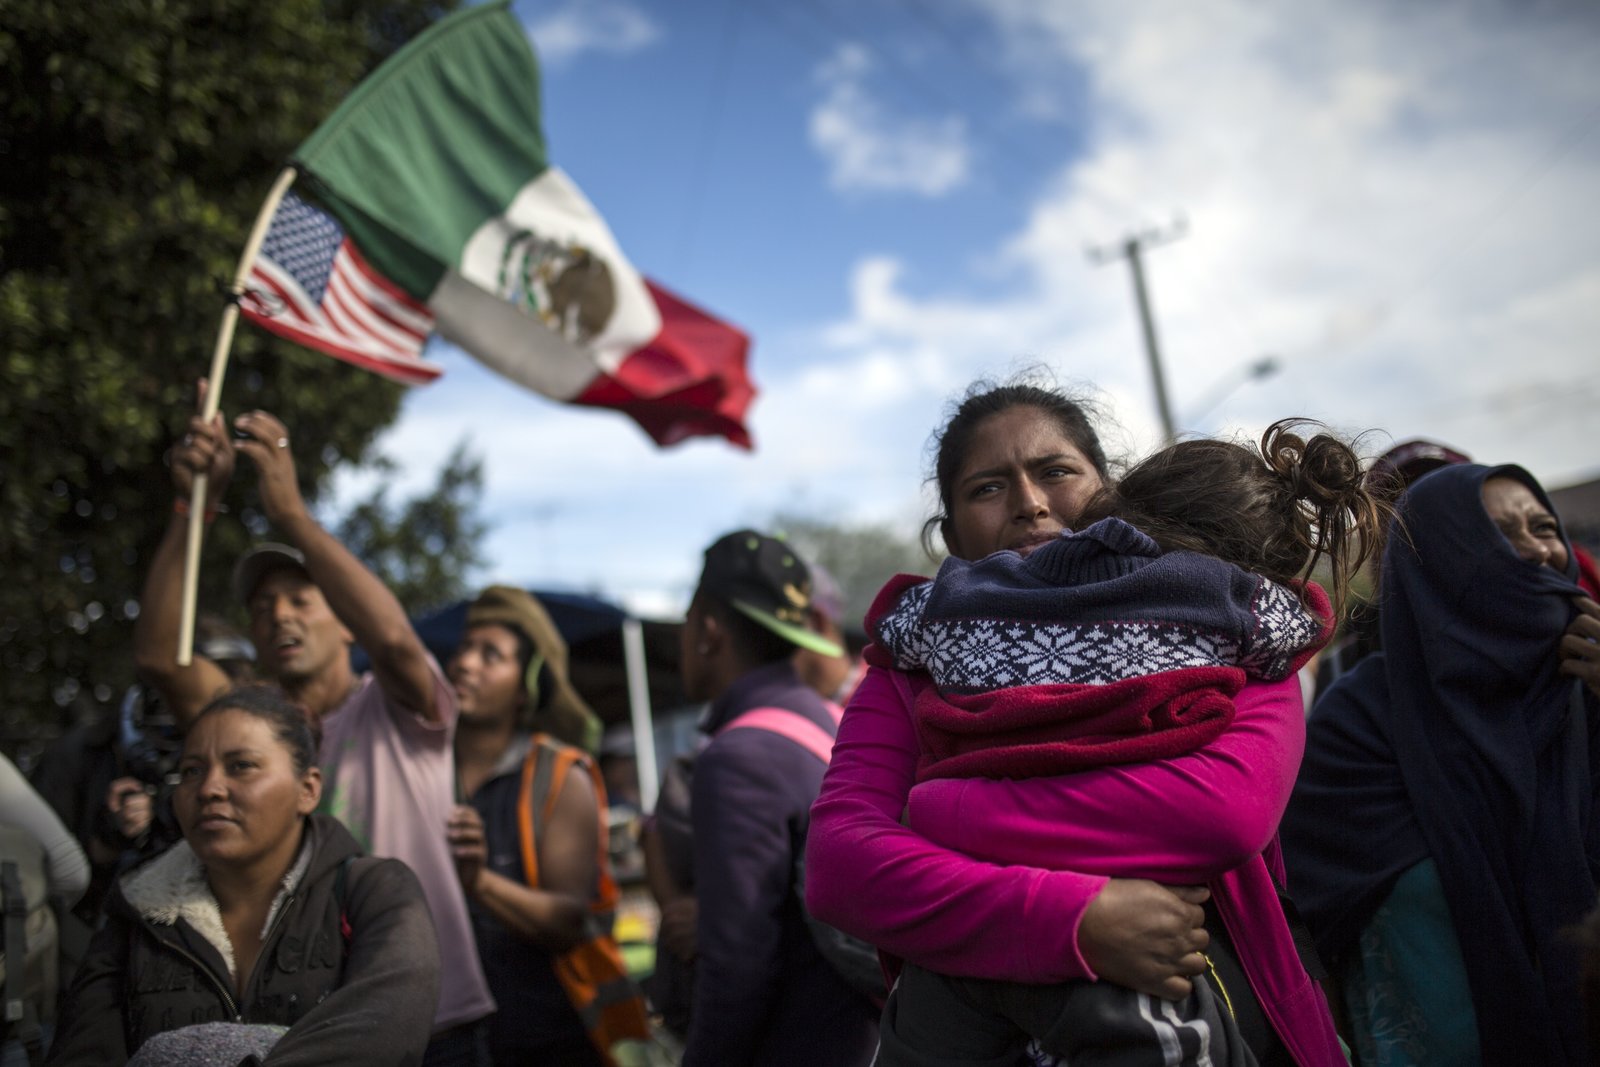 Tensión. La hondureña Leticia Núñez abraza a su hija durante la marcha pacífica que llevaron a cabo el jueves en Tijuana los inmigrantes de la caravana que pretende cruzar a Estados Unidos. (AP)